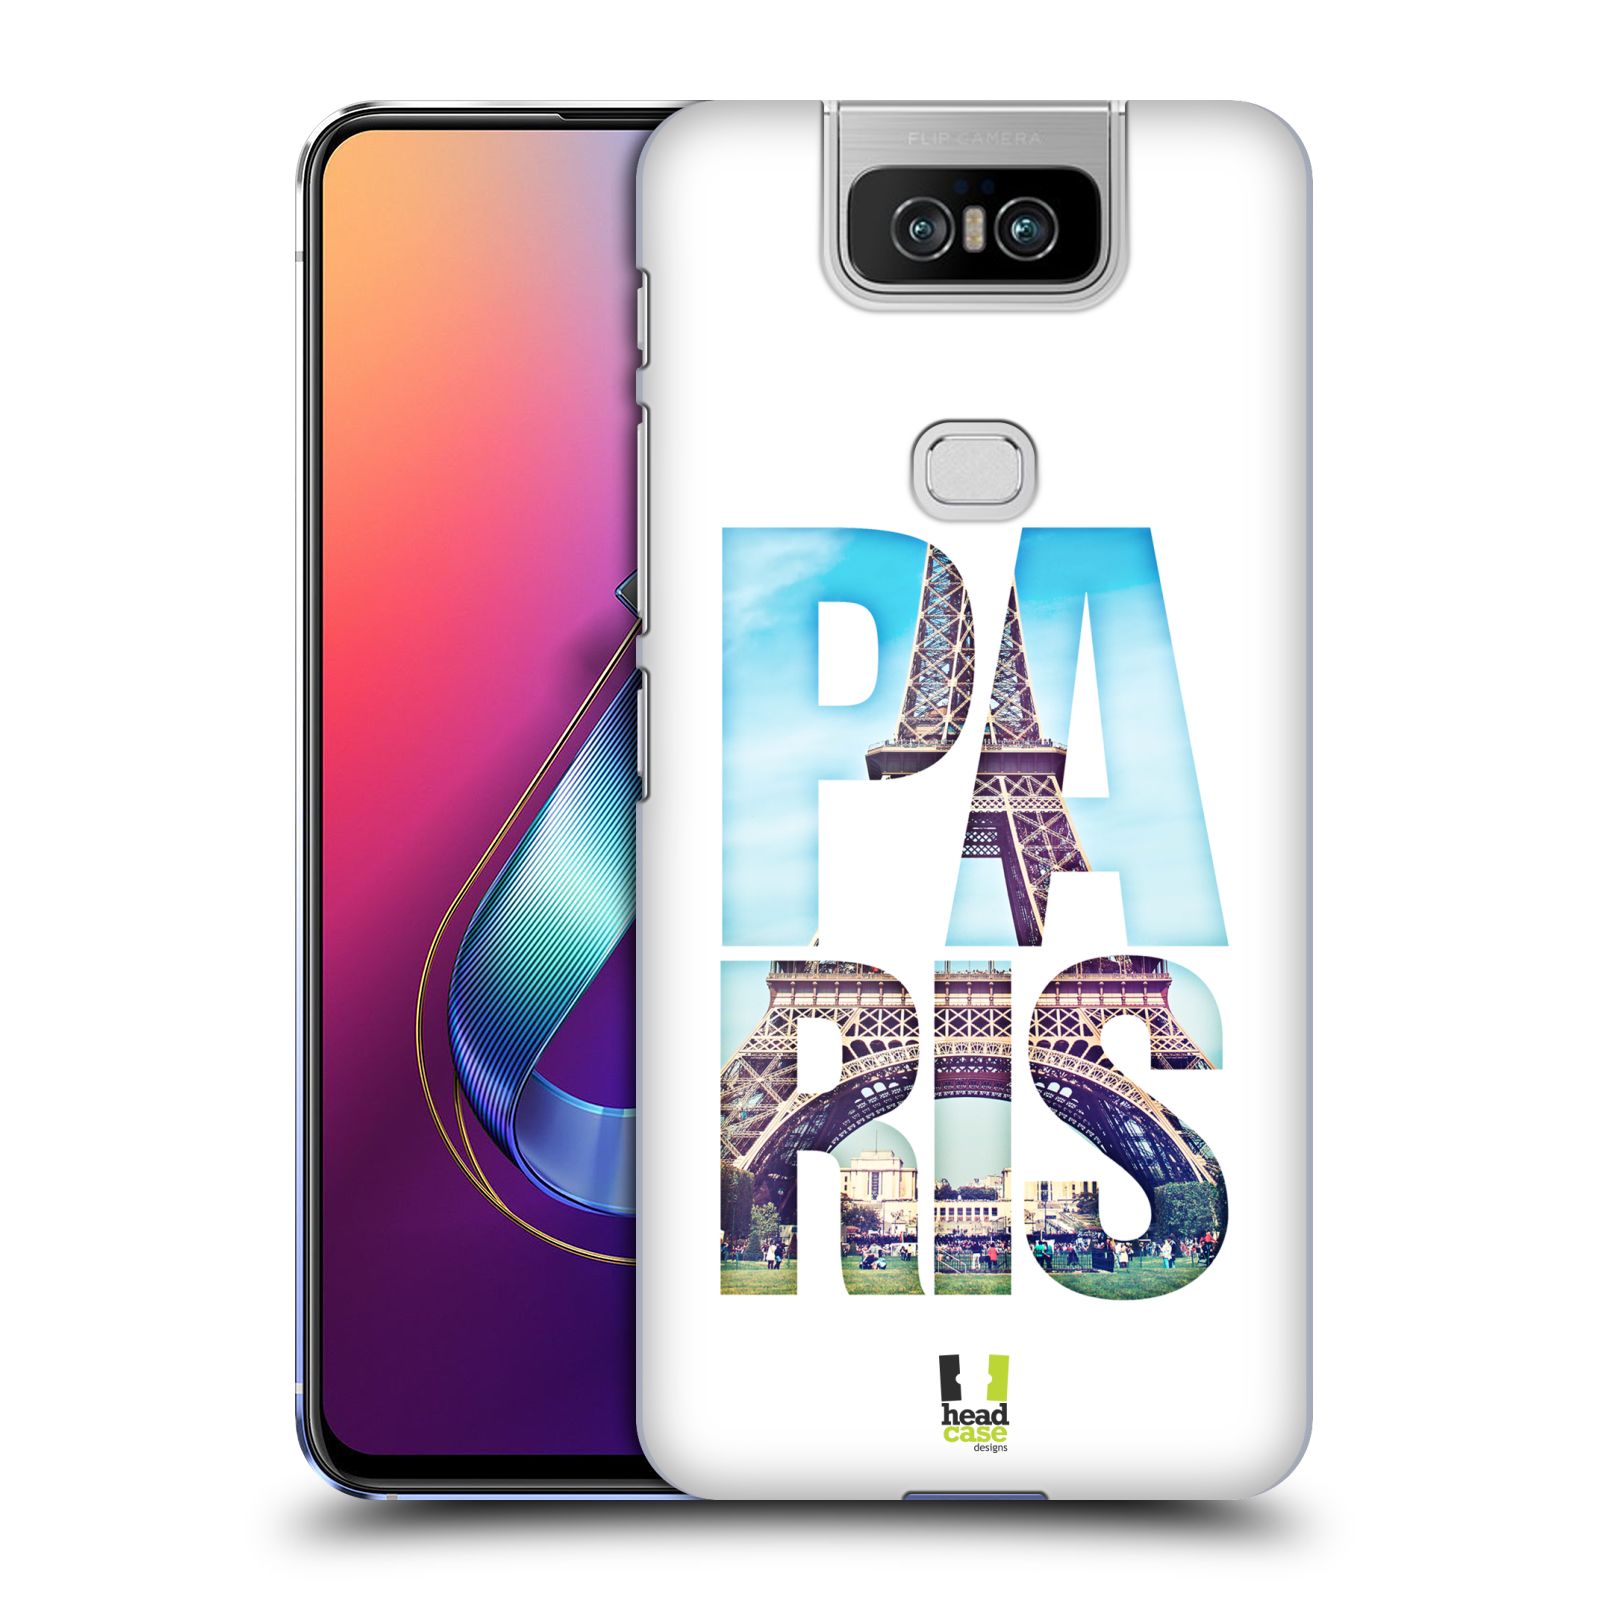 Pouzdro na mobil Asus Zenfone 6 ZS630KL - HEAD CASE - vzor Města foto a nadpis FRANCIE, PAŘÍŽ, EIFFELOVA VĚŽ